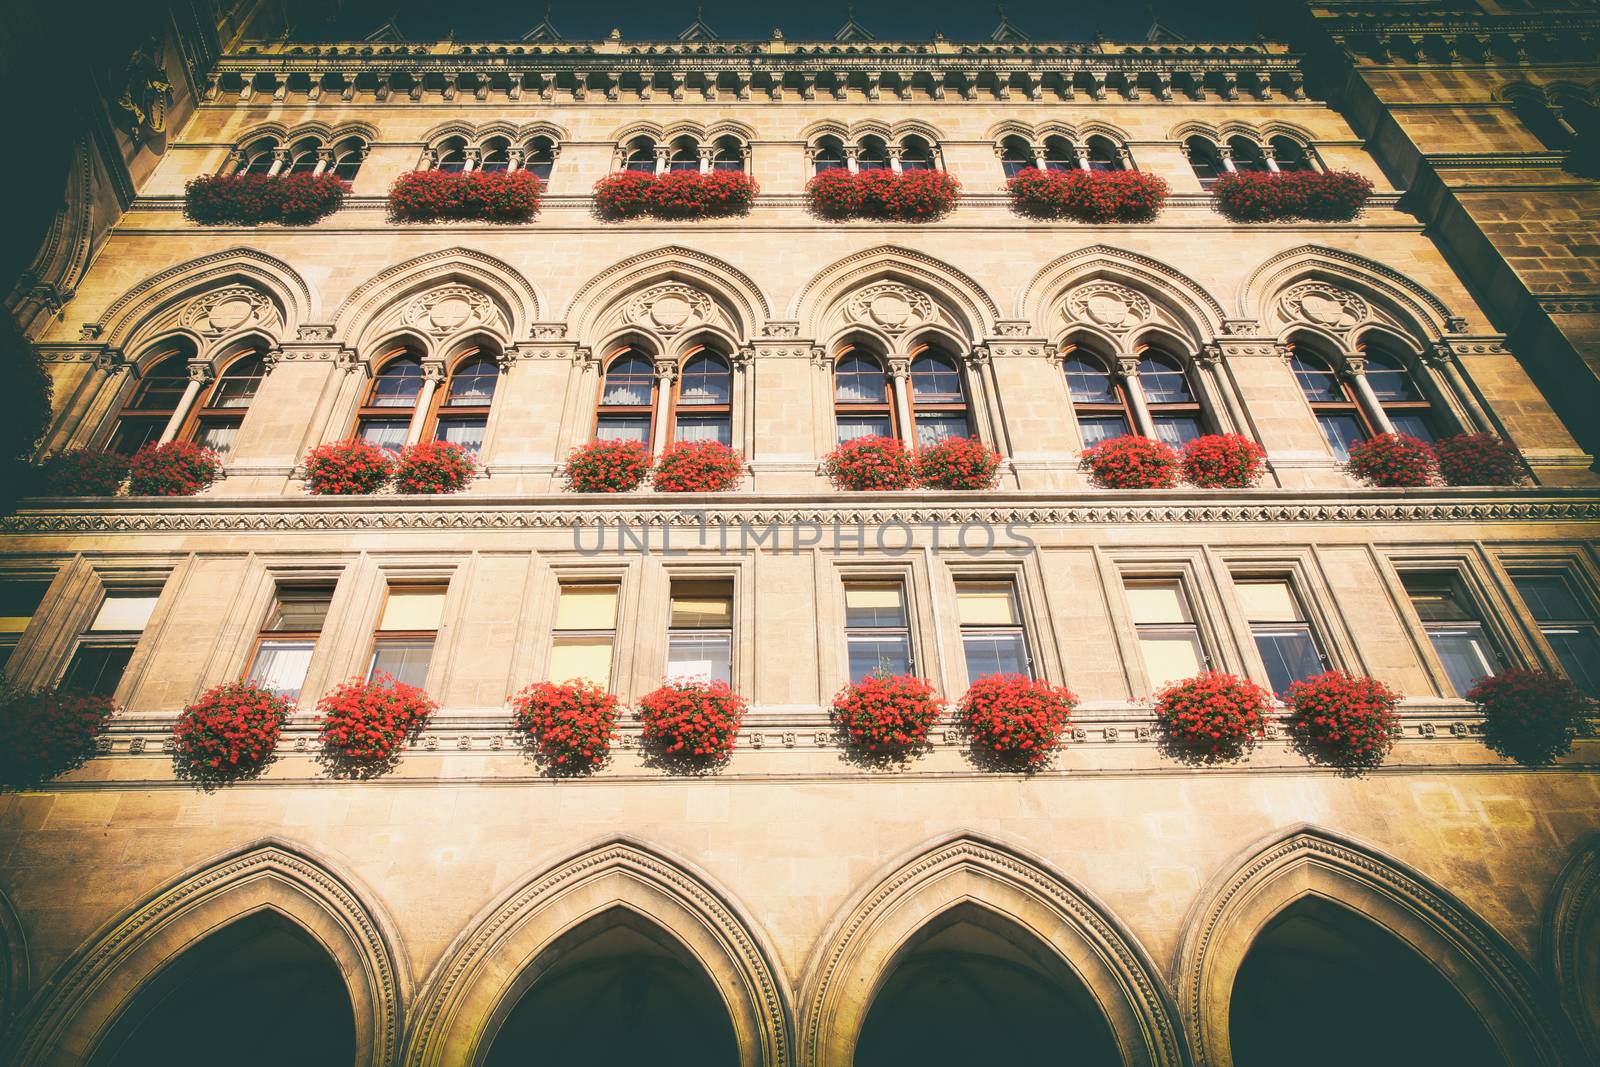 Rathaus in Vienna, Austria (vintage photo) by vladacanon